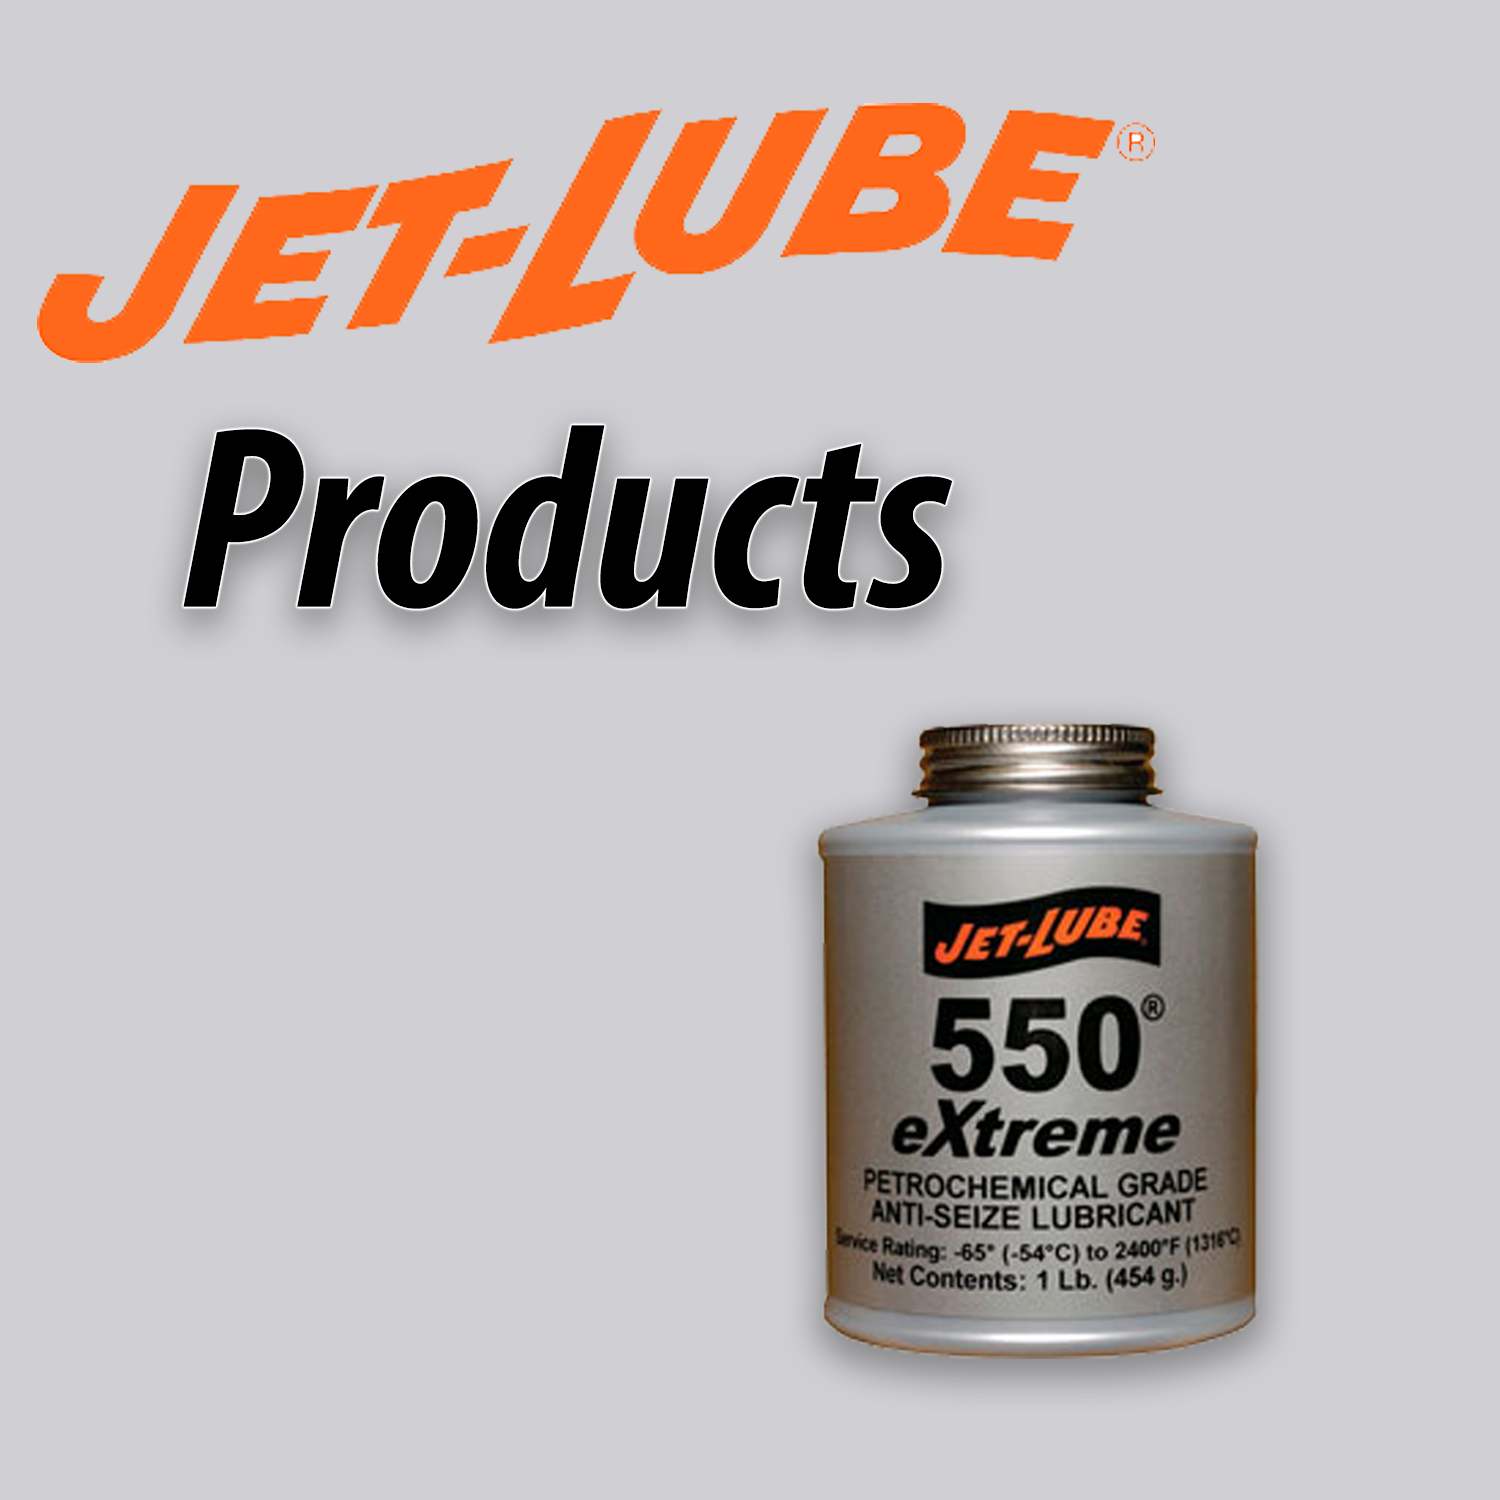 Jet Lube 550